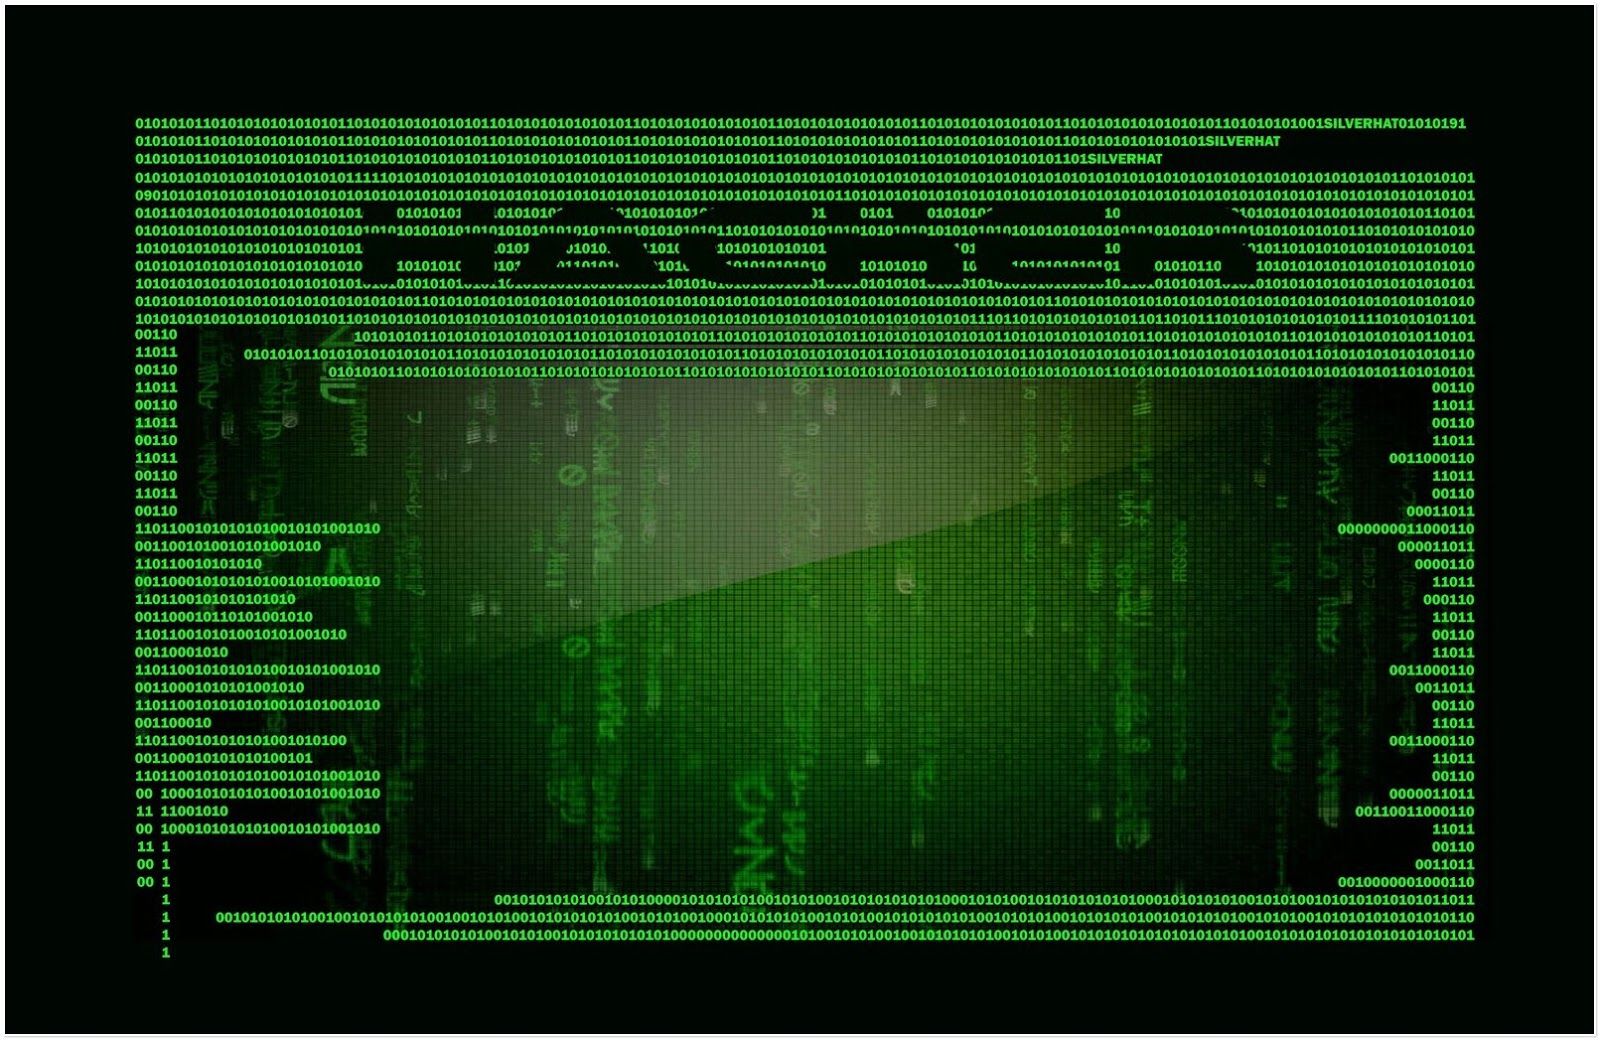 Los 25 mejores fondos de pantalla de hackers nuestra última colección - PicsBroker.com